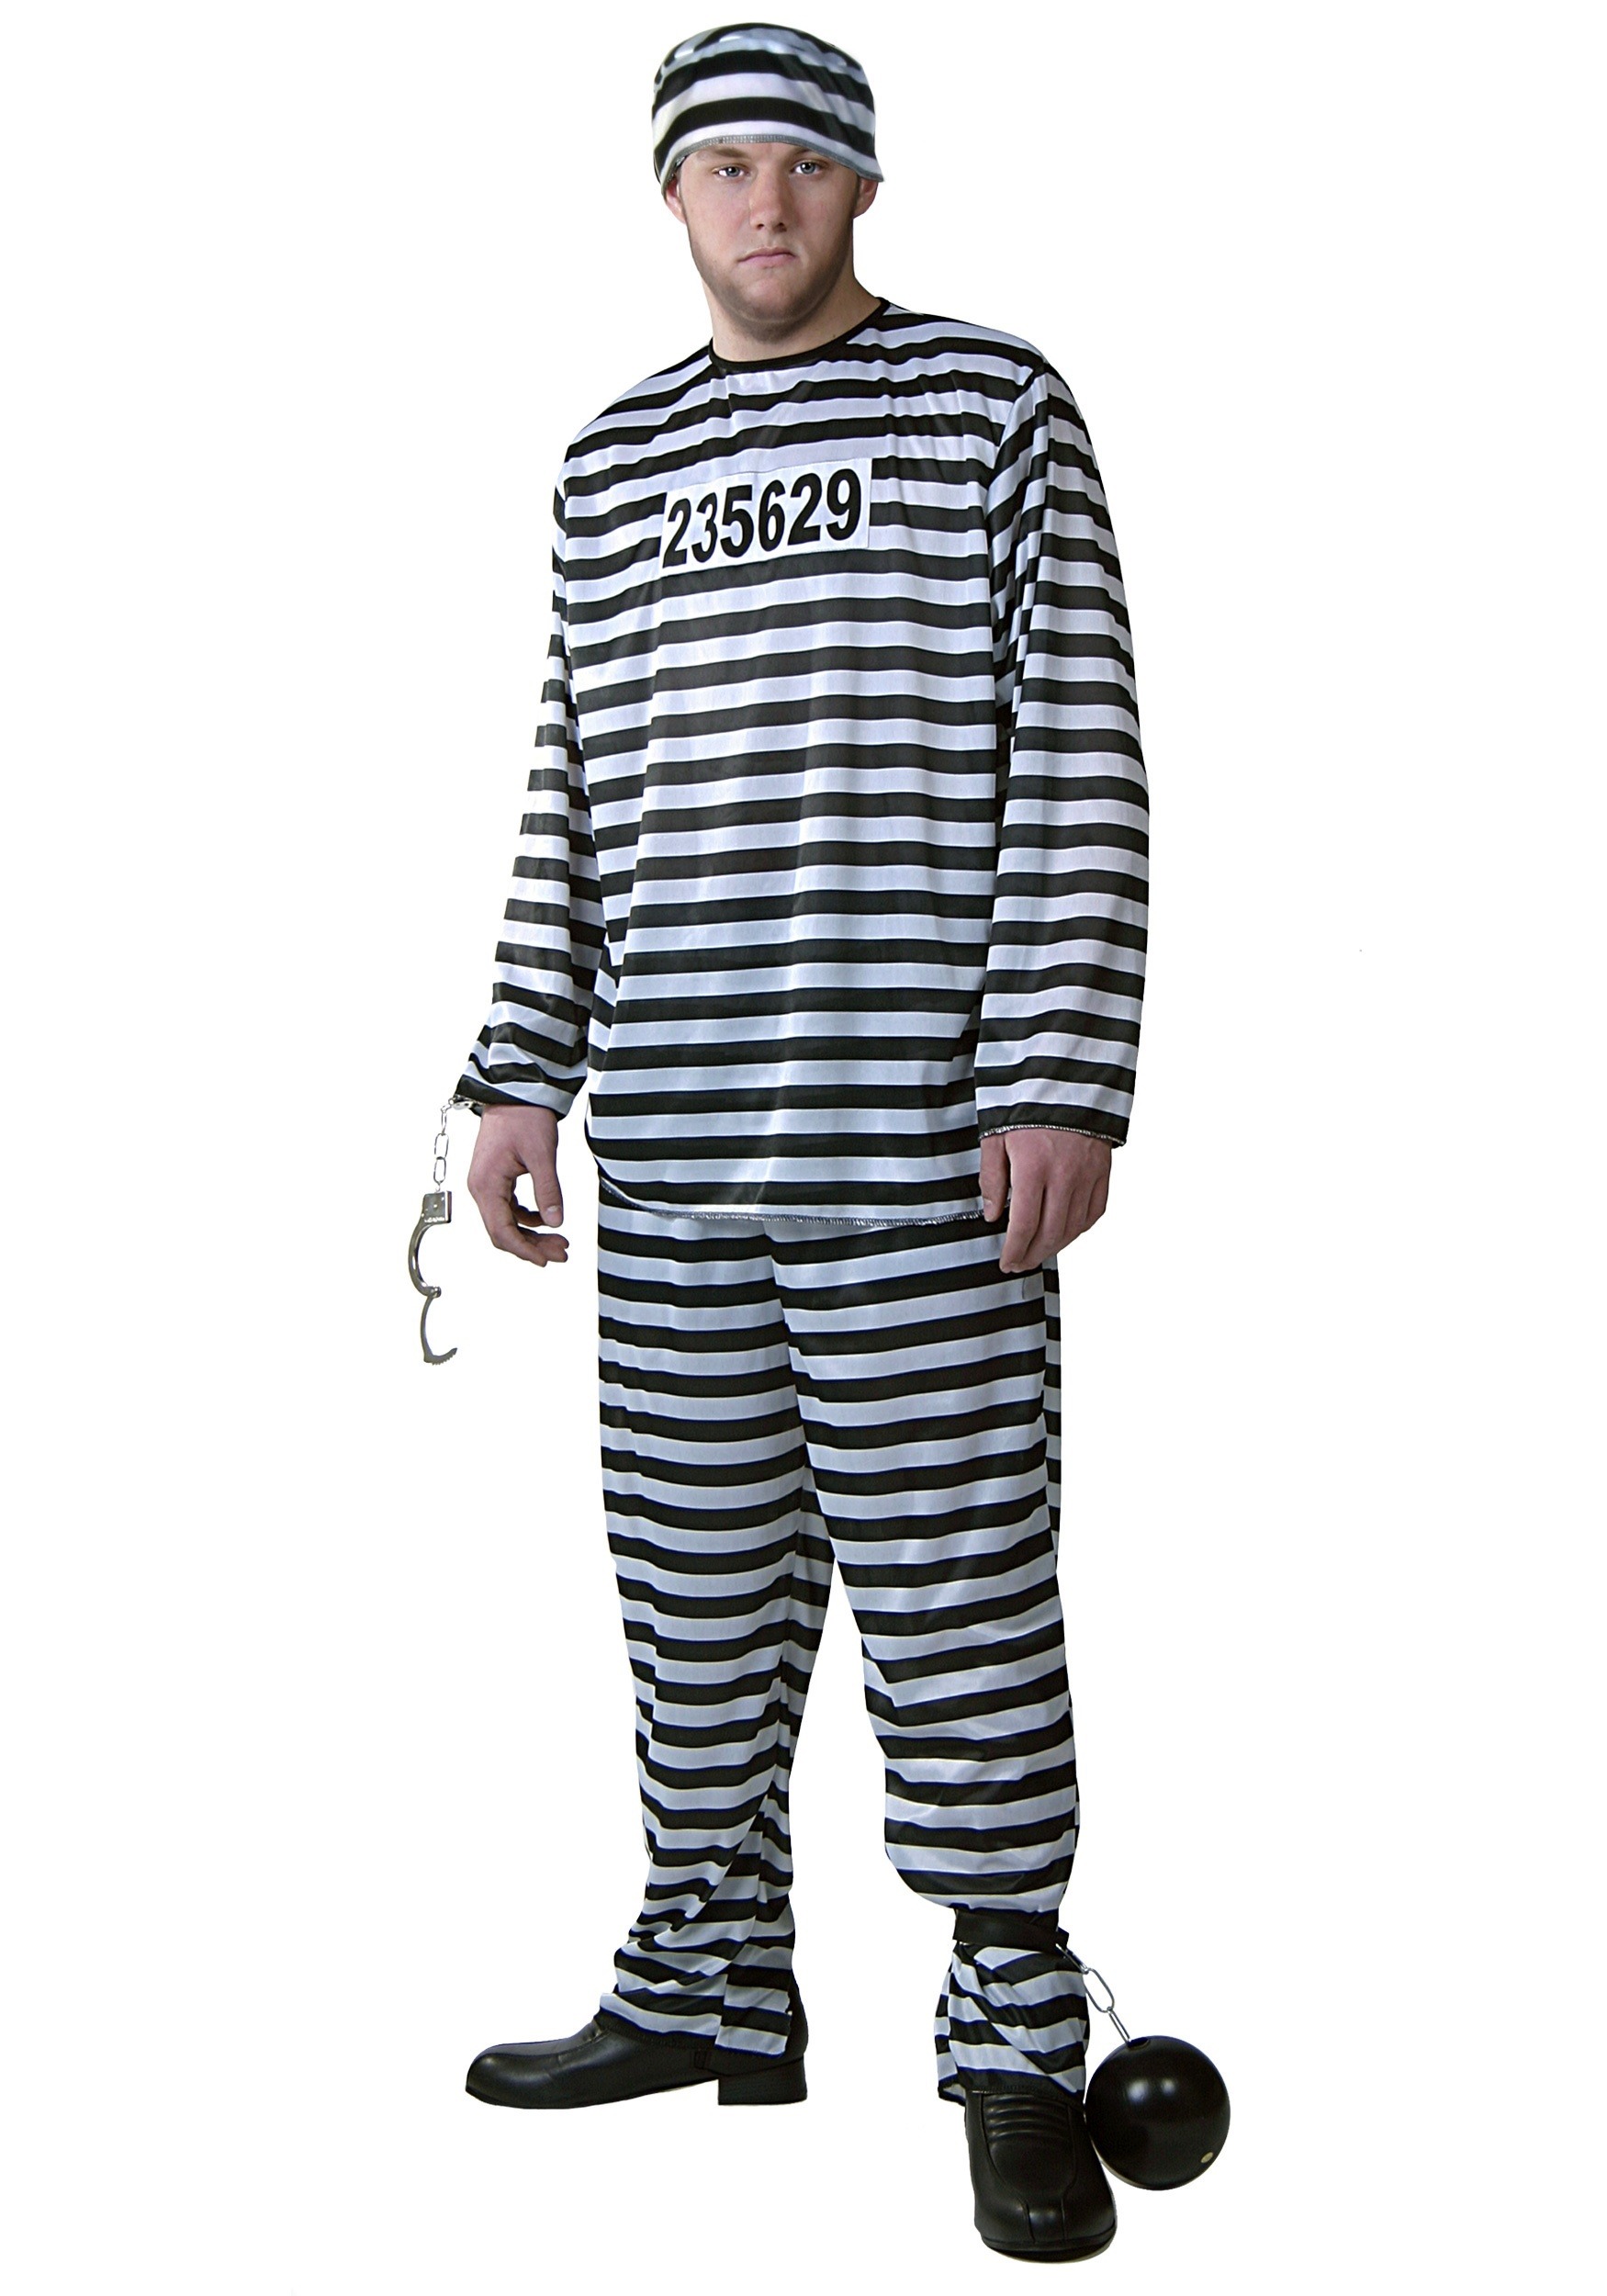 Plus Size Men's Prisoner Costume - image 4 of 5